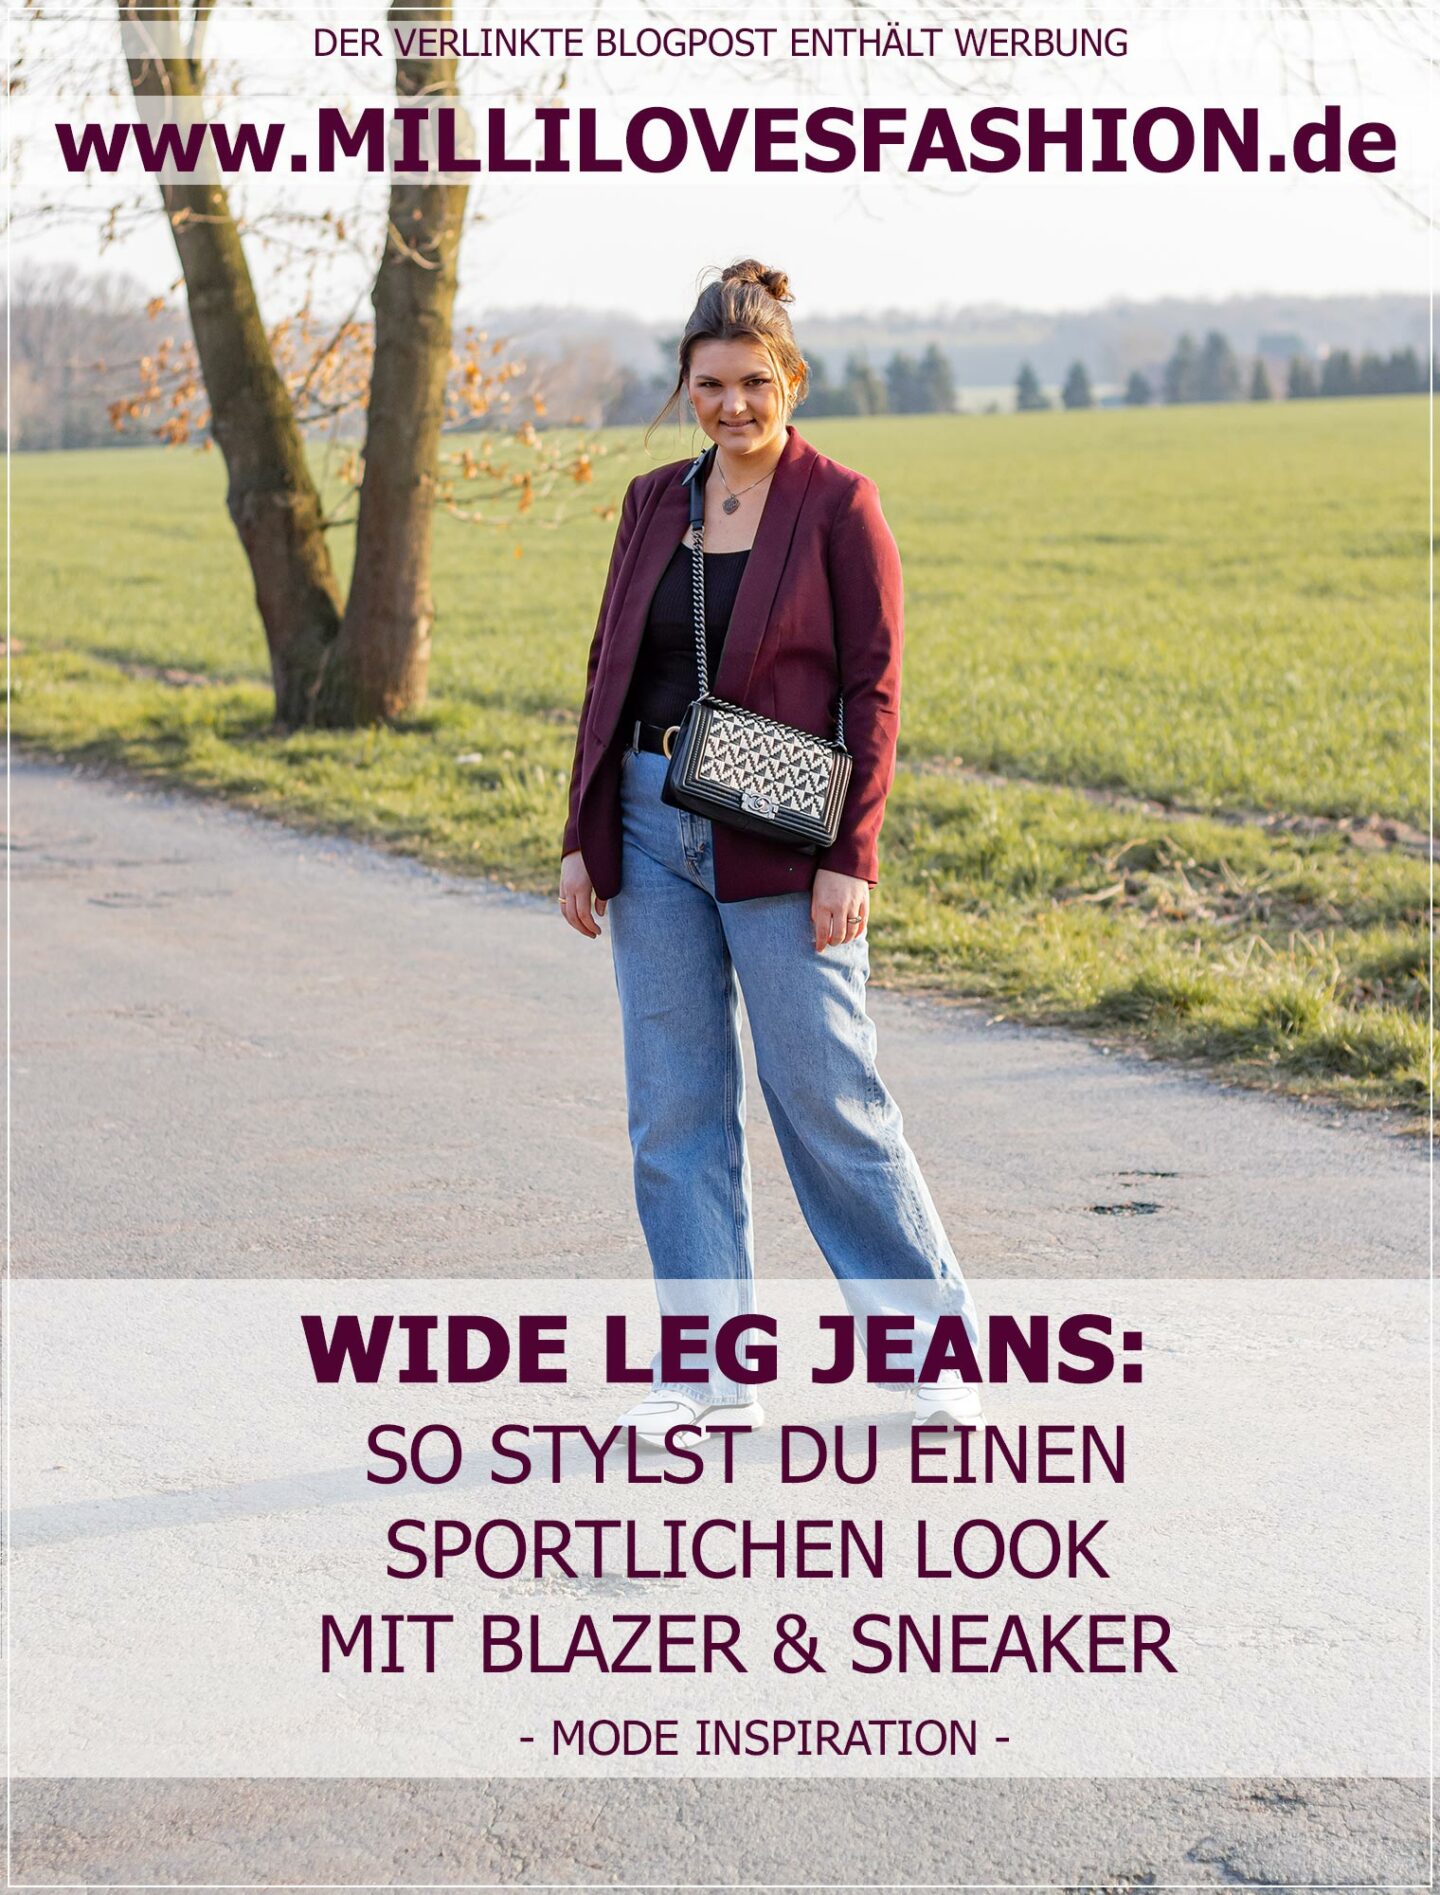 Wide Leg Jeans als sportlicher Look mit Blazer